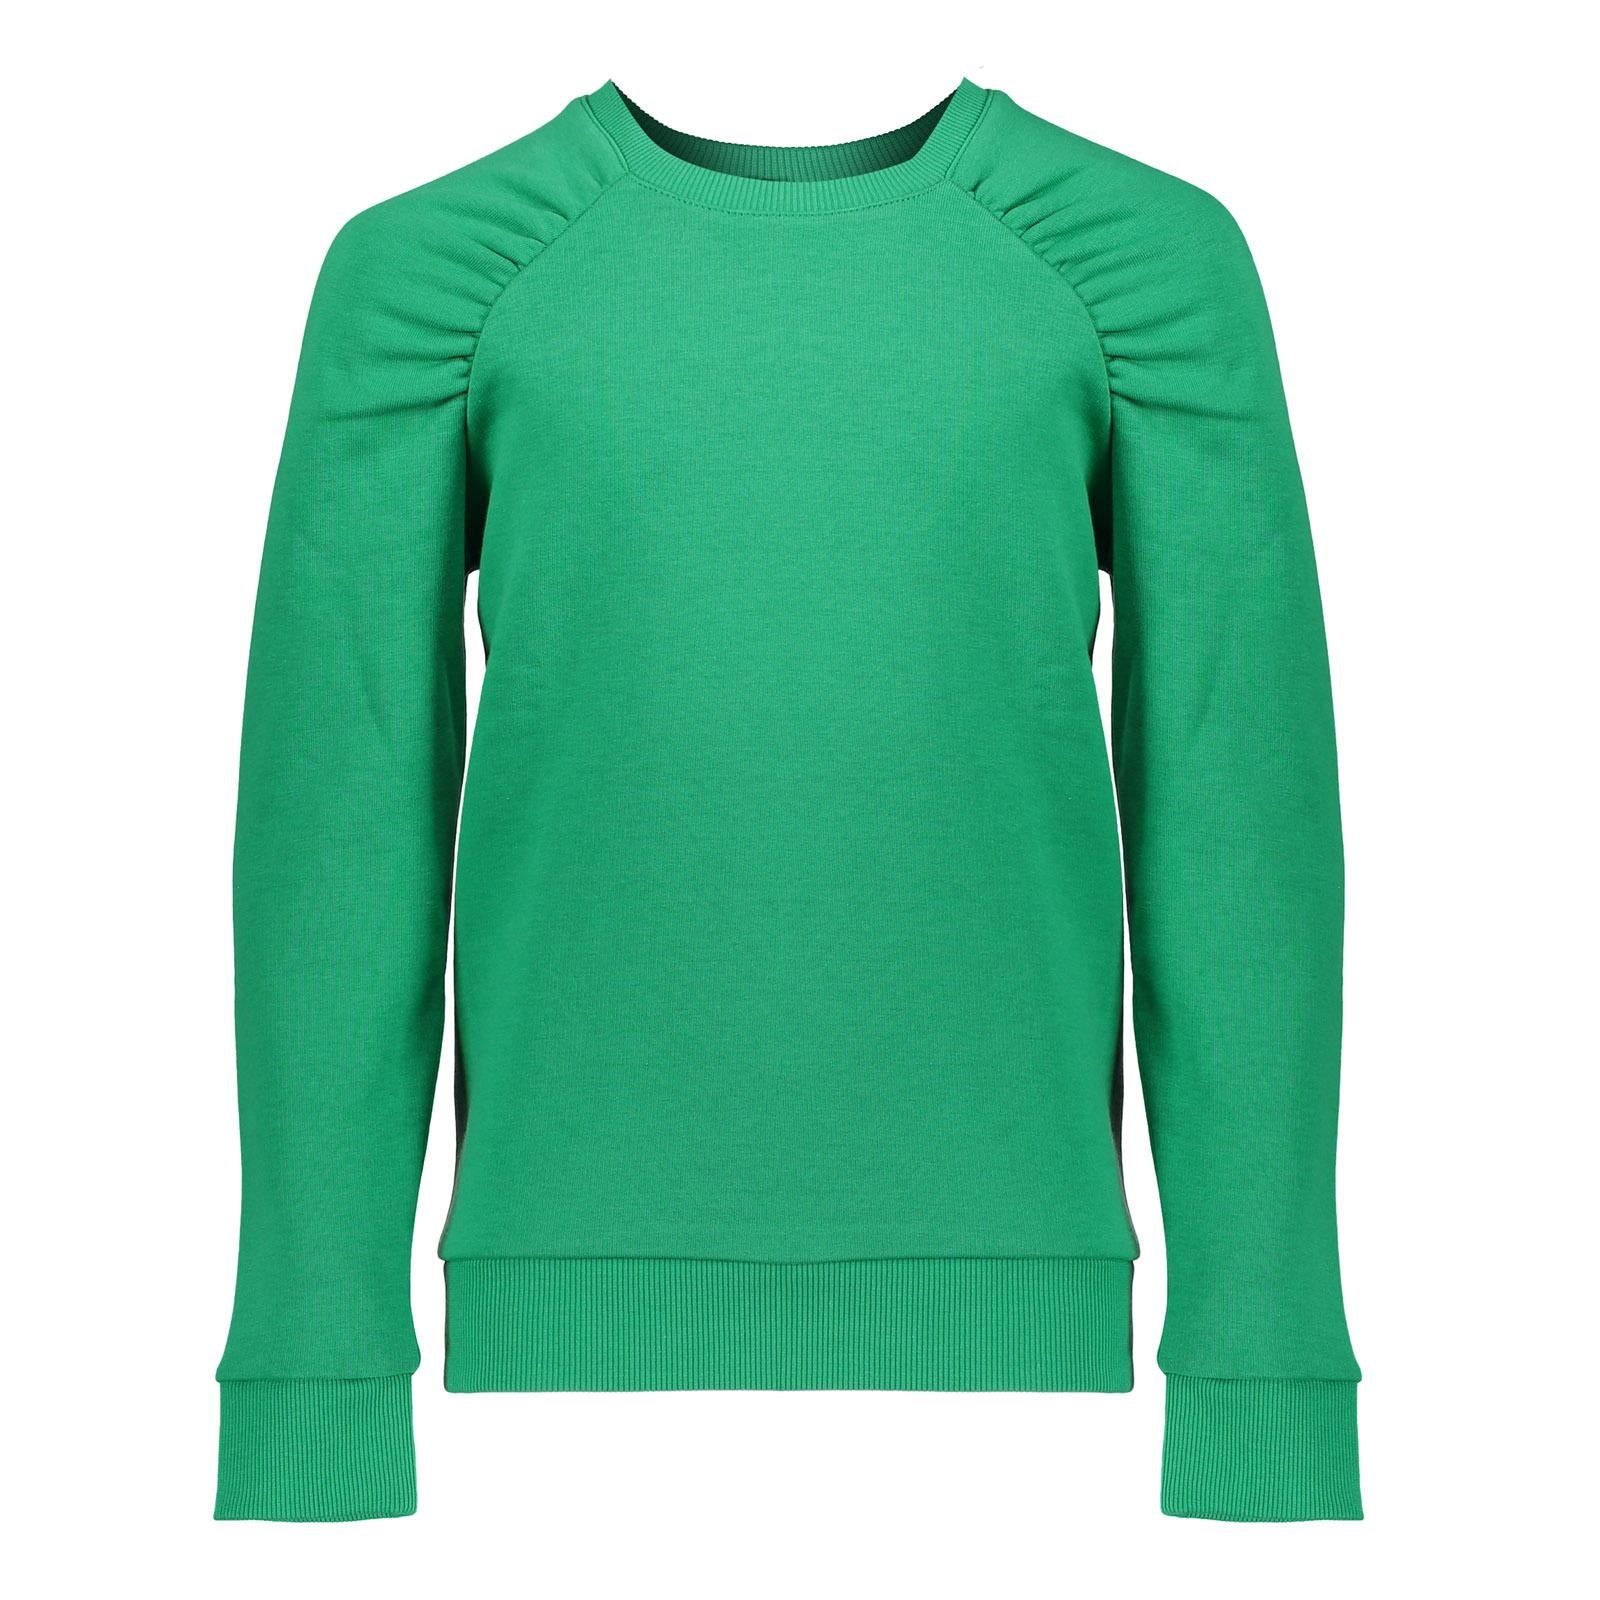 Meisjes Sweater pleads at arm van Geisha in de kleur Evergreen in maat 176.